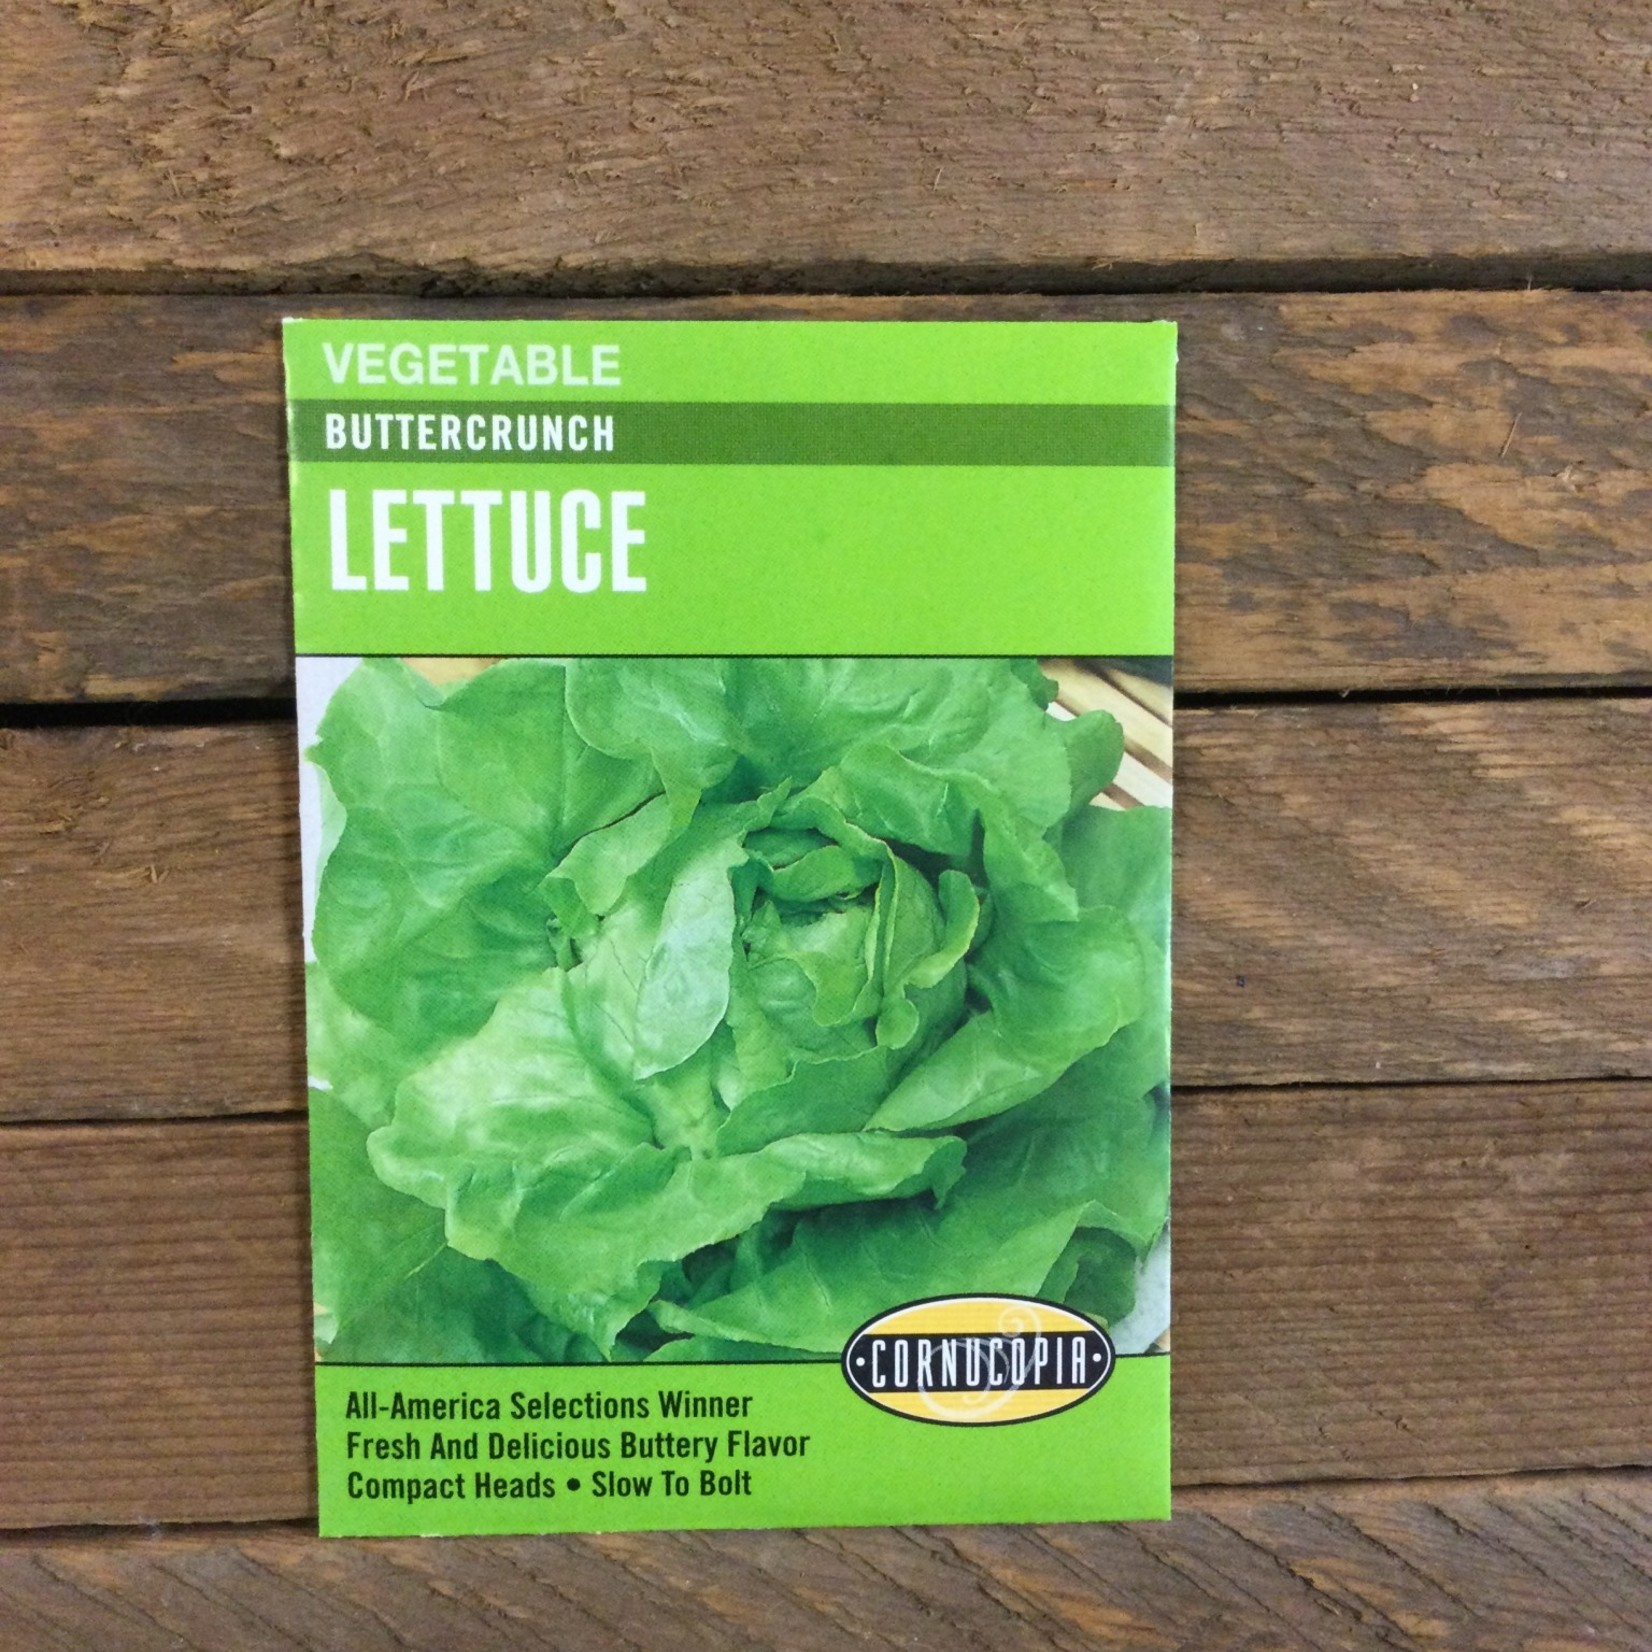 Cornucopia Lettuce - Lettuce Buttercrunch